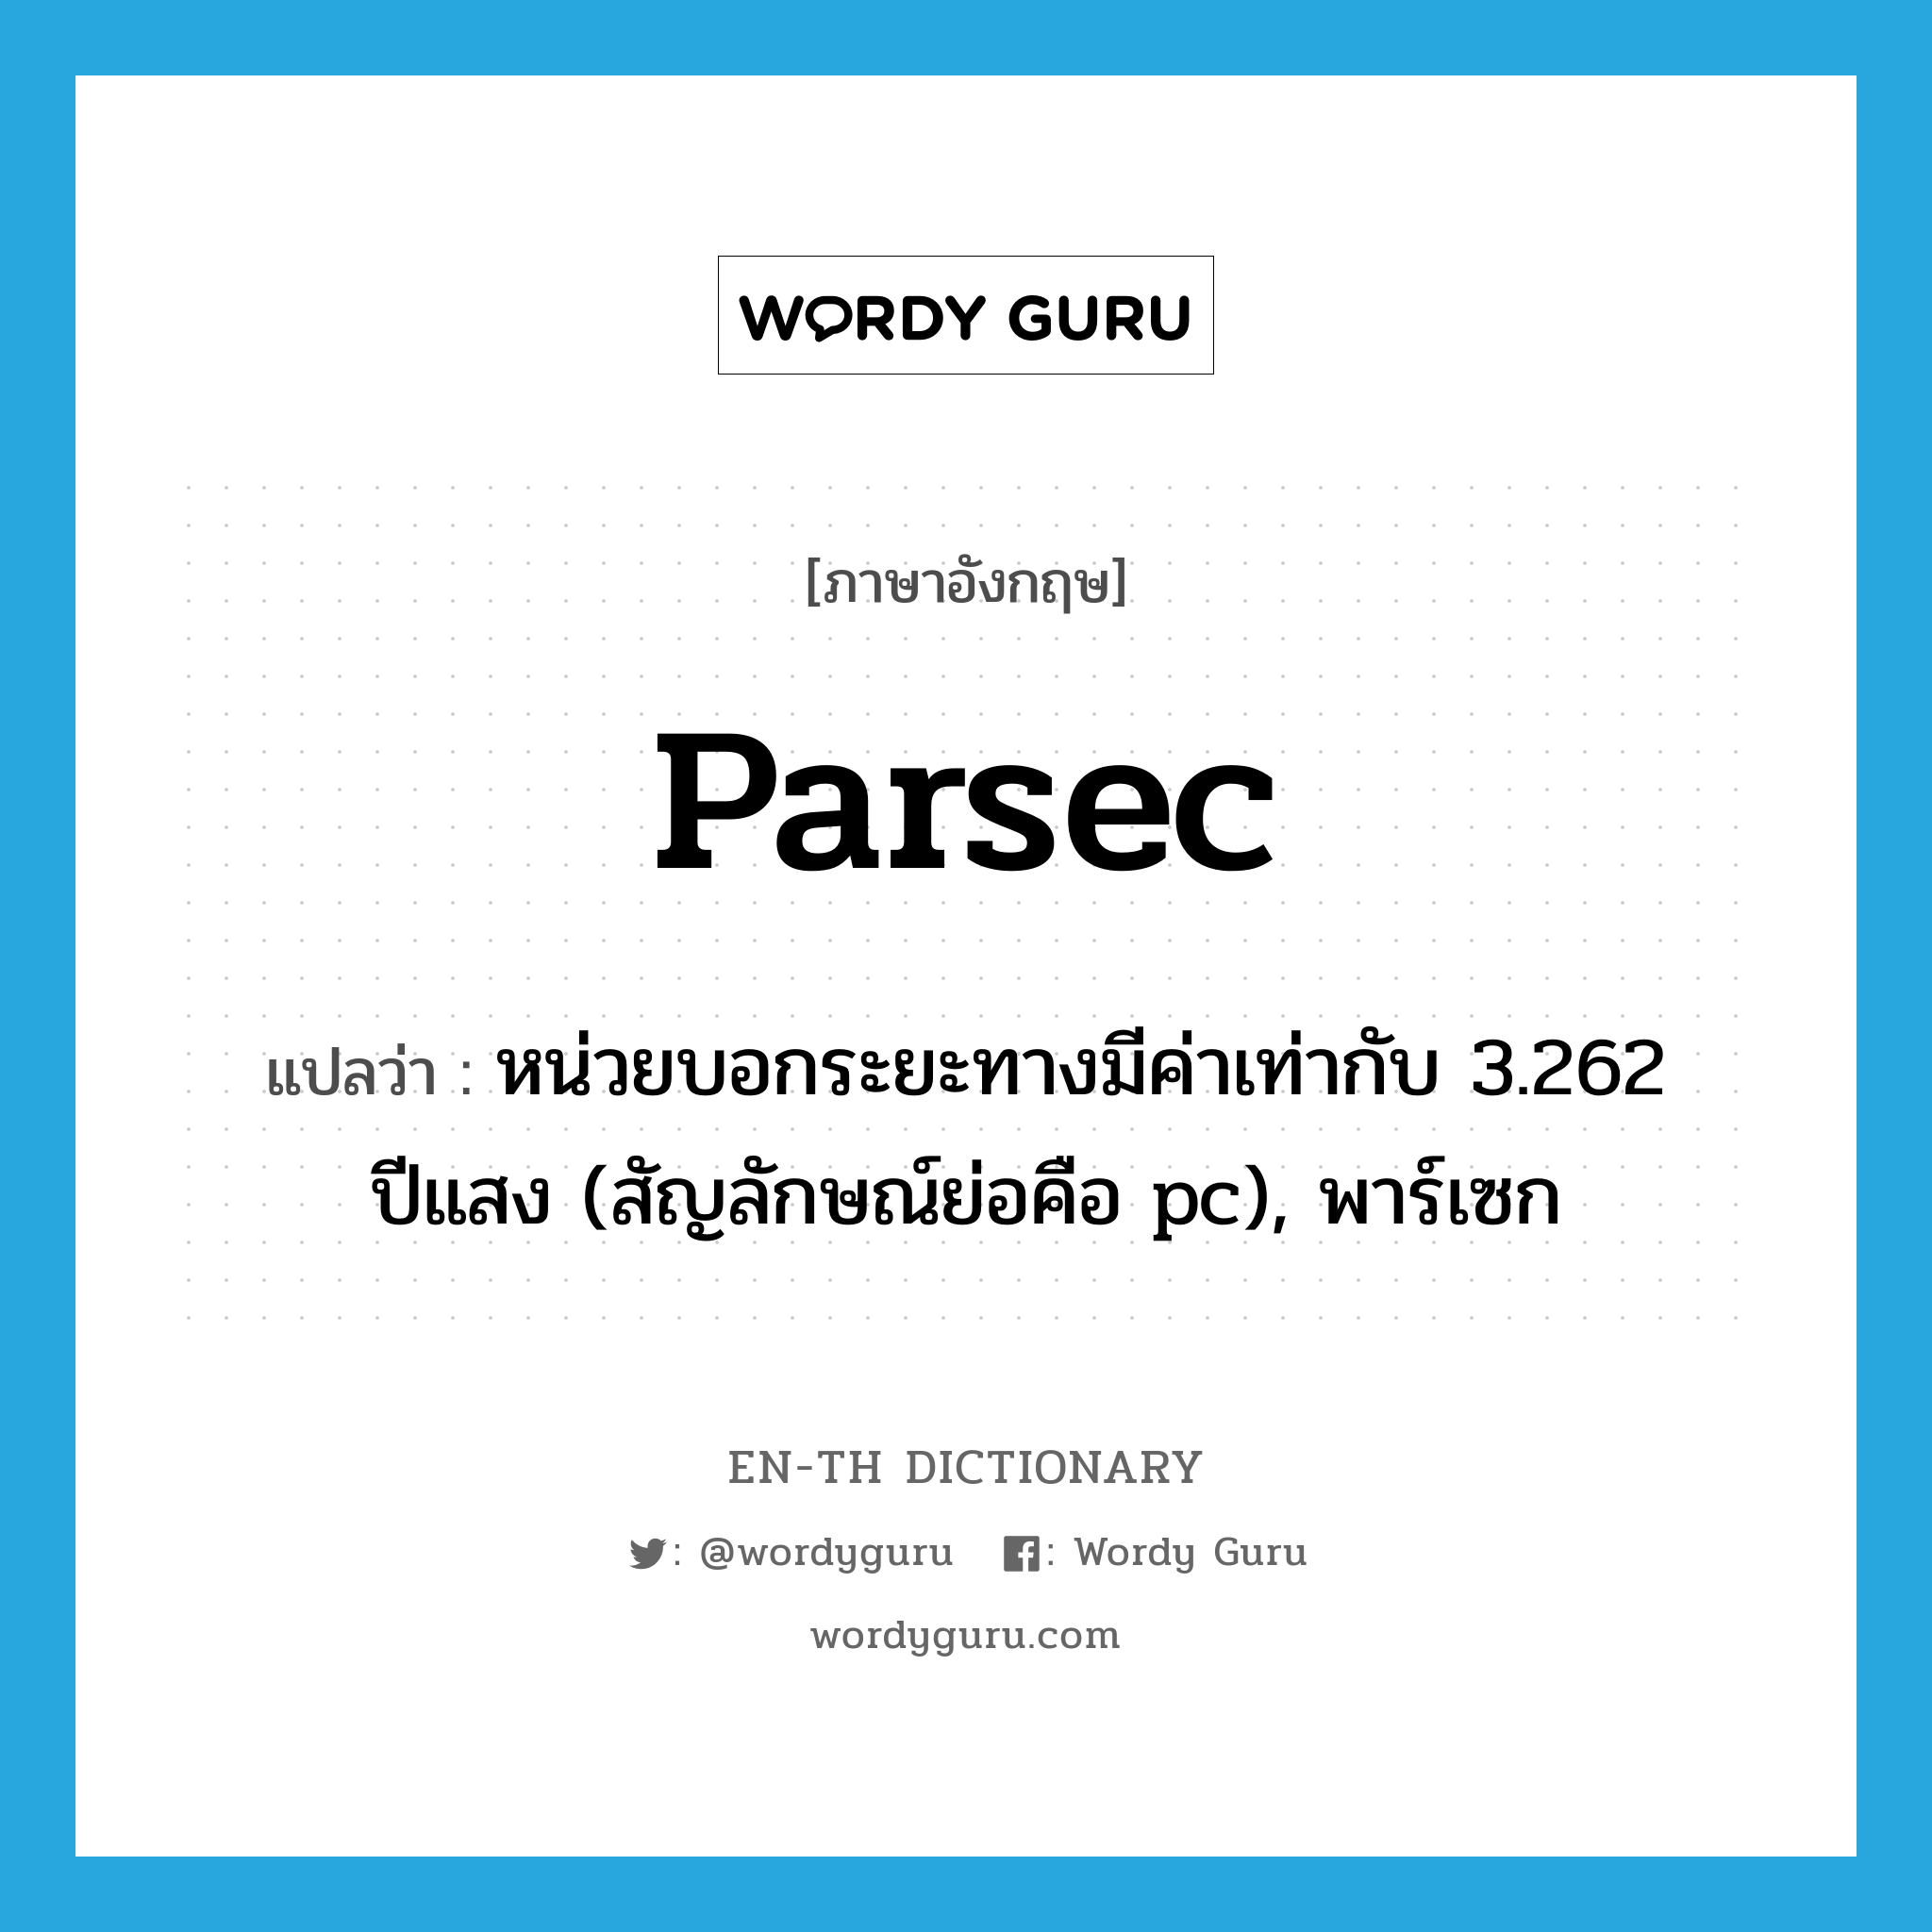 หน่วยบอกระยะทางมีค่าเท่ากับ 3.262 ปีแสง (สัญลักษณ์ย่อคือ pc), พาร์เซก ภาษาอังกฤษ?, คำศัพท์ภาษาอังกฤษ หน่วยบอกระยะทางมีค่าเท่ากับ 3.262 ปีแสง (สัญลักษณ์ย่อคือ pc), พาร์เซก แปลว่า parsec ประเภท N หมวด N